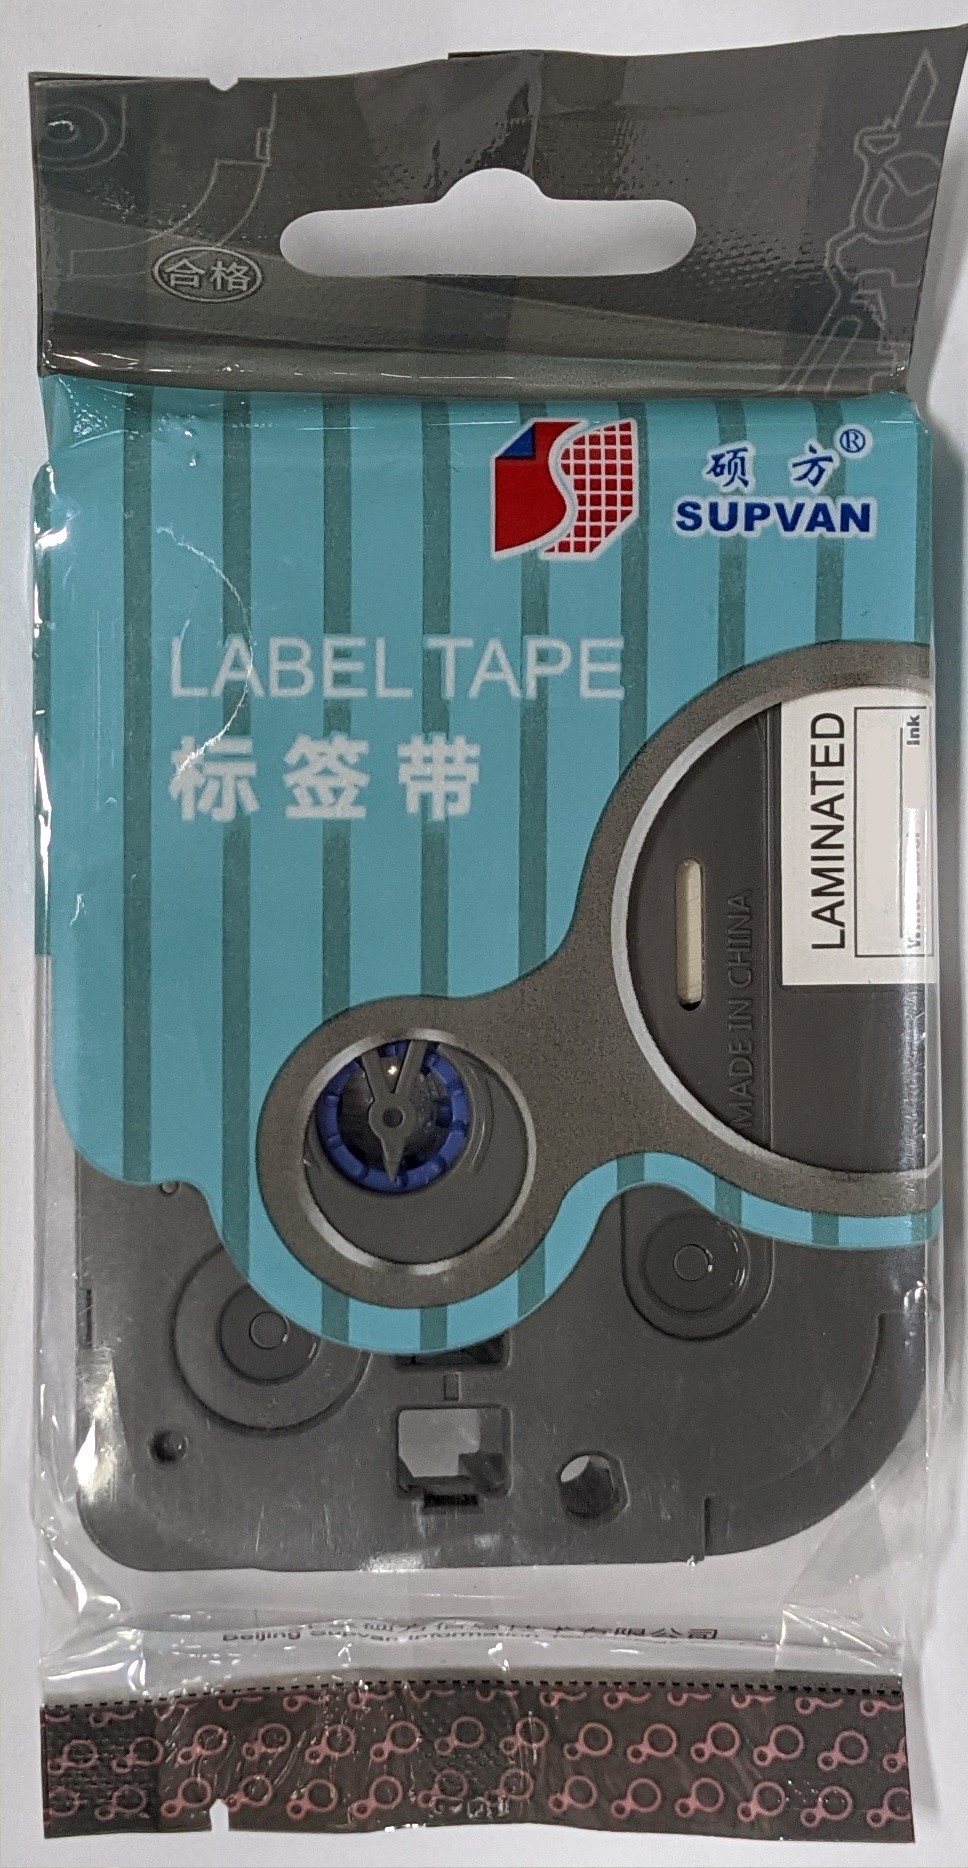 Samolepicí páska Supvan L-421E, 9mm x 8m, čierna tlač / červený podklad, laminovaná